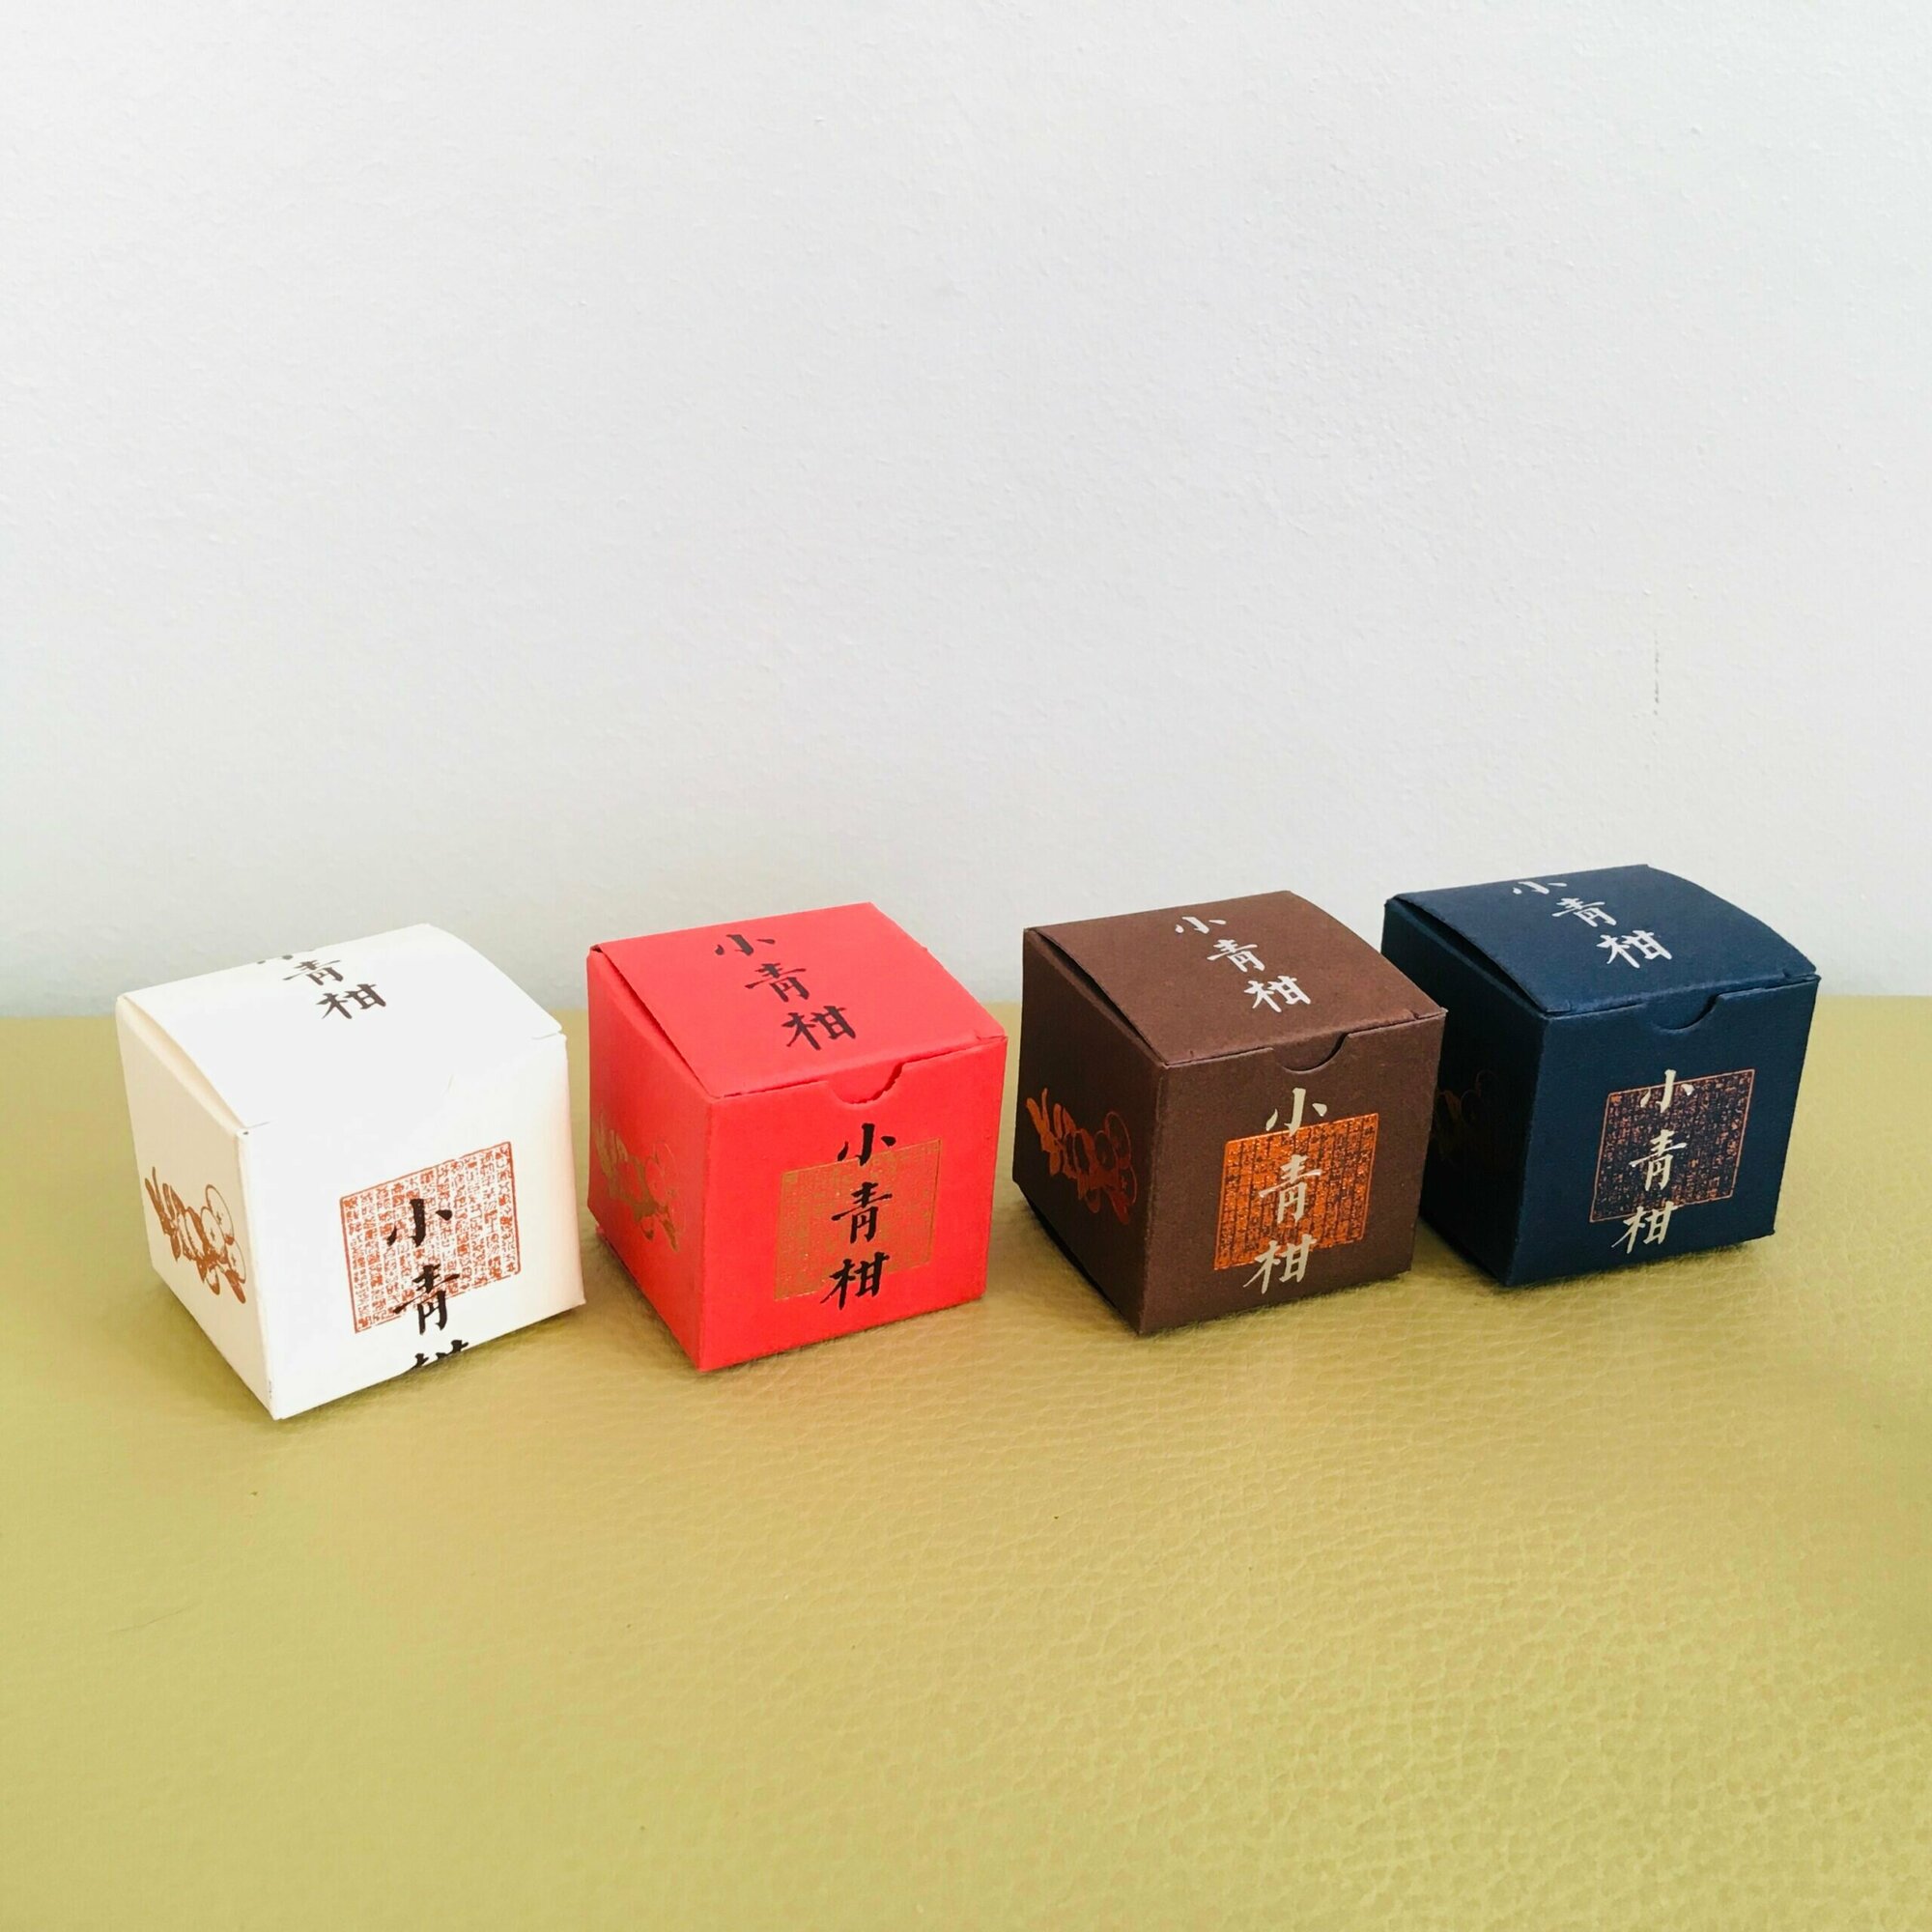 Картонная коробка складная под пуэр точа, бутон связанного чая, пуэр в лайме 4 х 4 х 4 см (4 штуки)